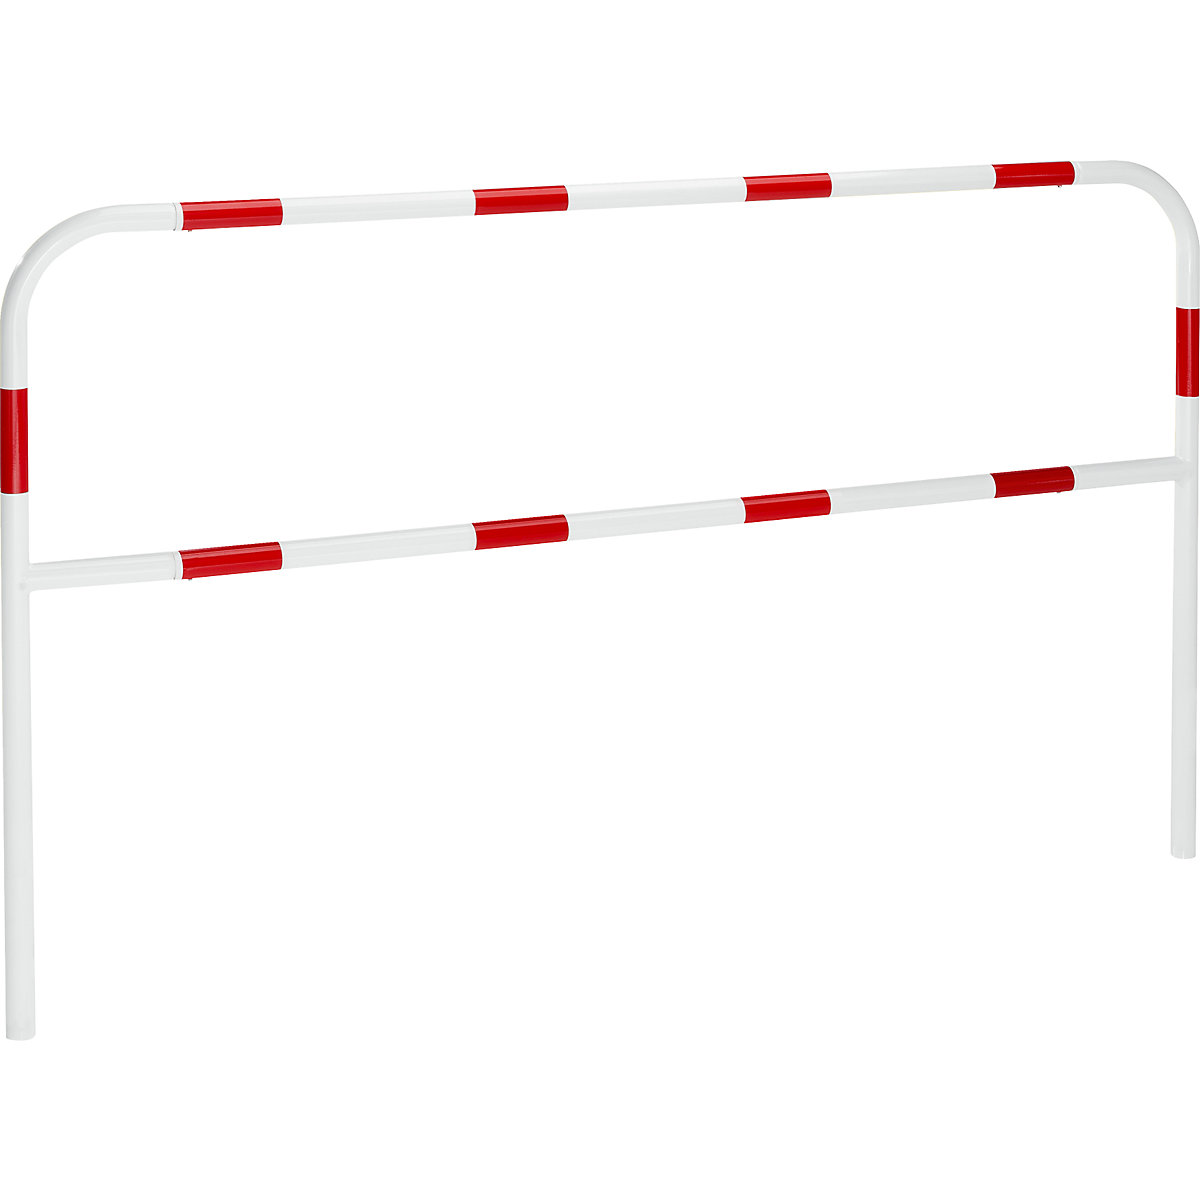 Rammschutzbügel, zum Einbetonieren, Breite 2000 mm, rot / weiß